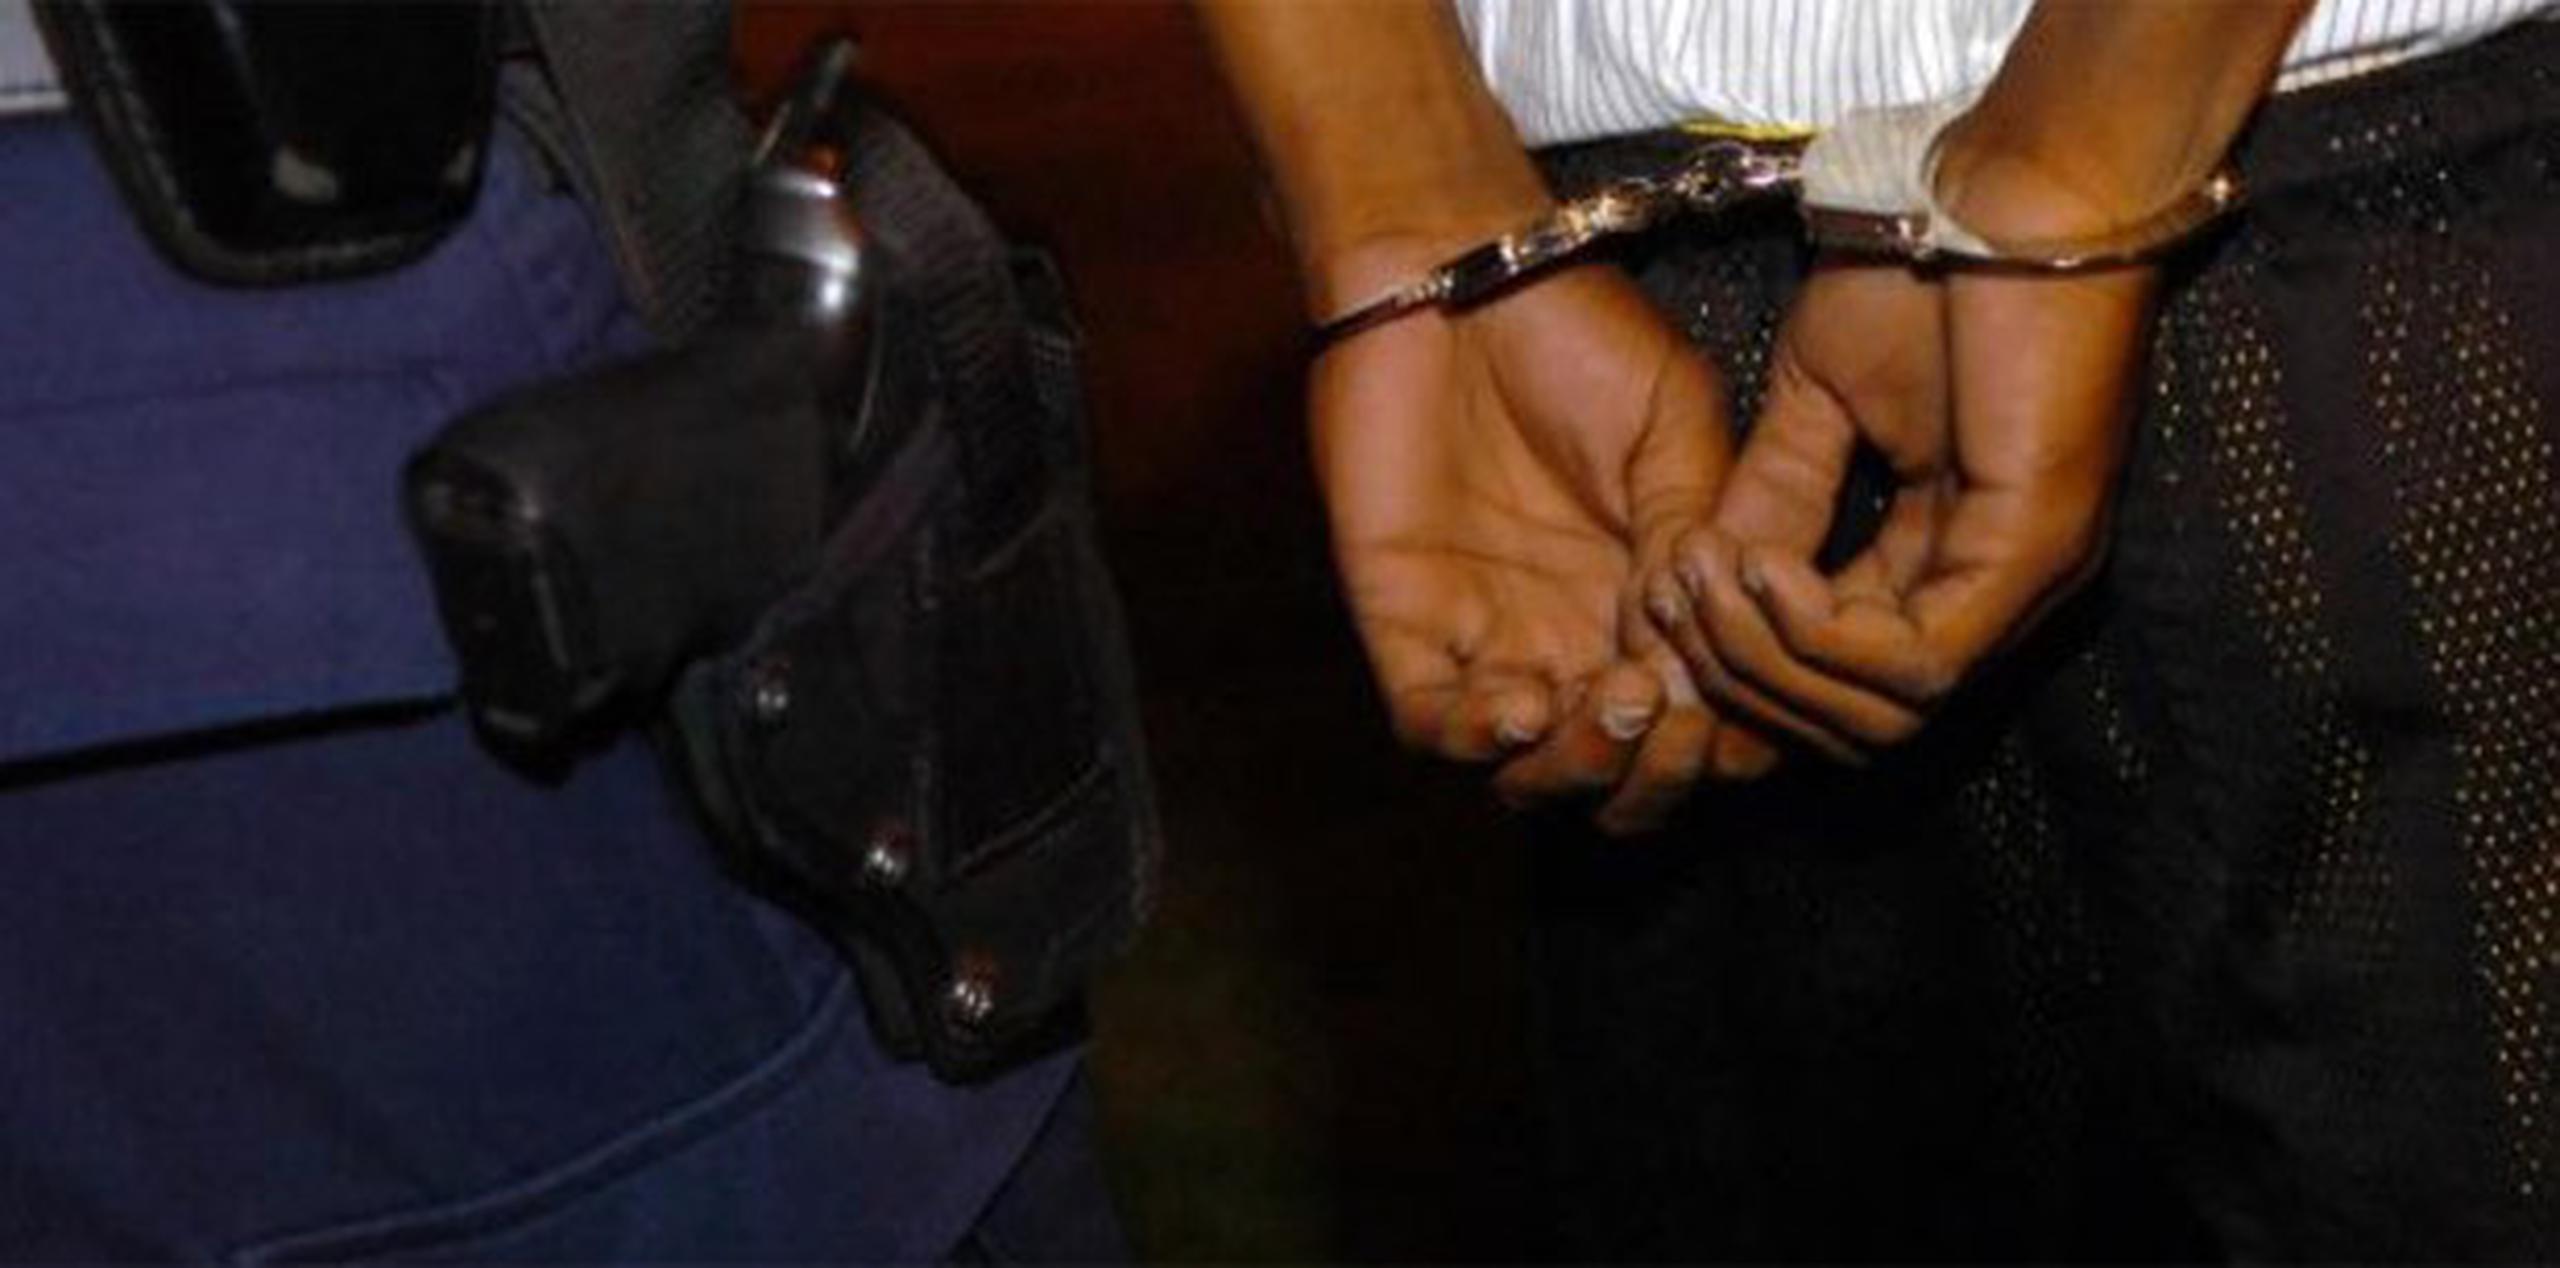 Las autoridades iniciarán hoy el proceso de extradición al país, indicó el teniente Luis Díaz Muñoz. (Archivo)